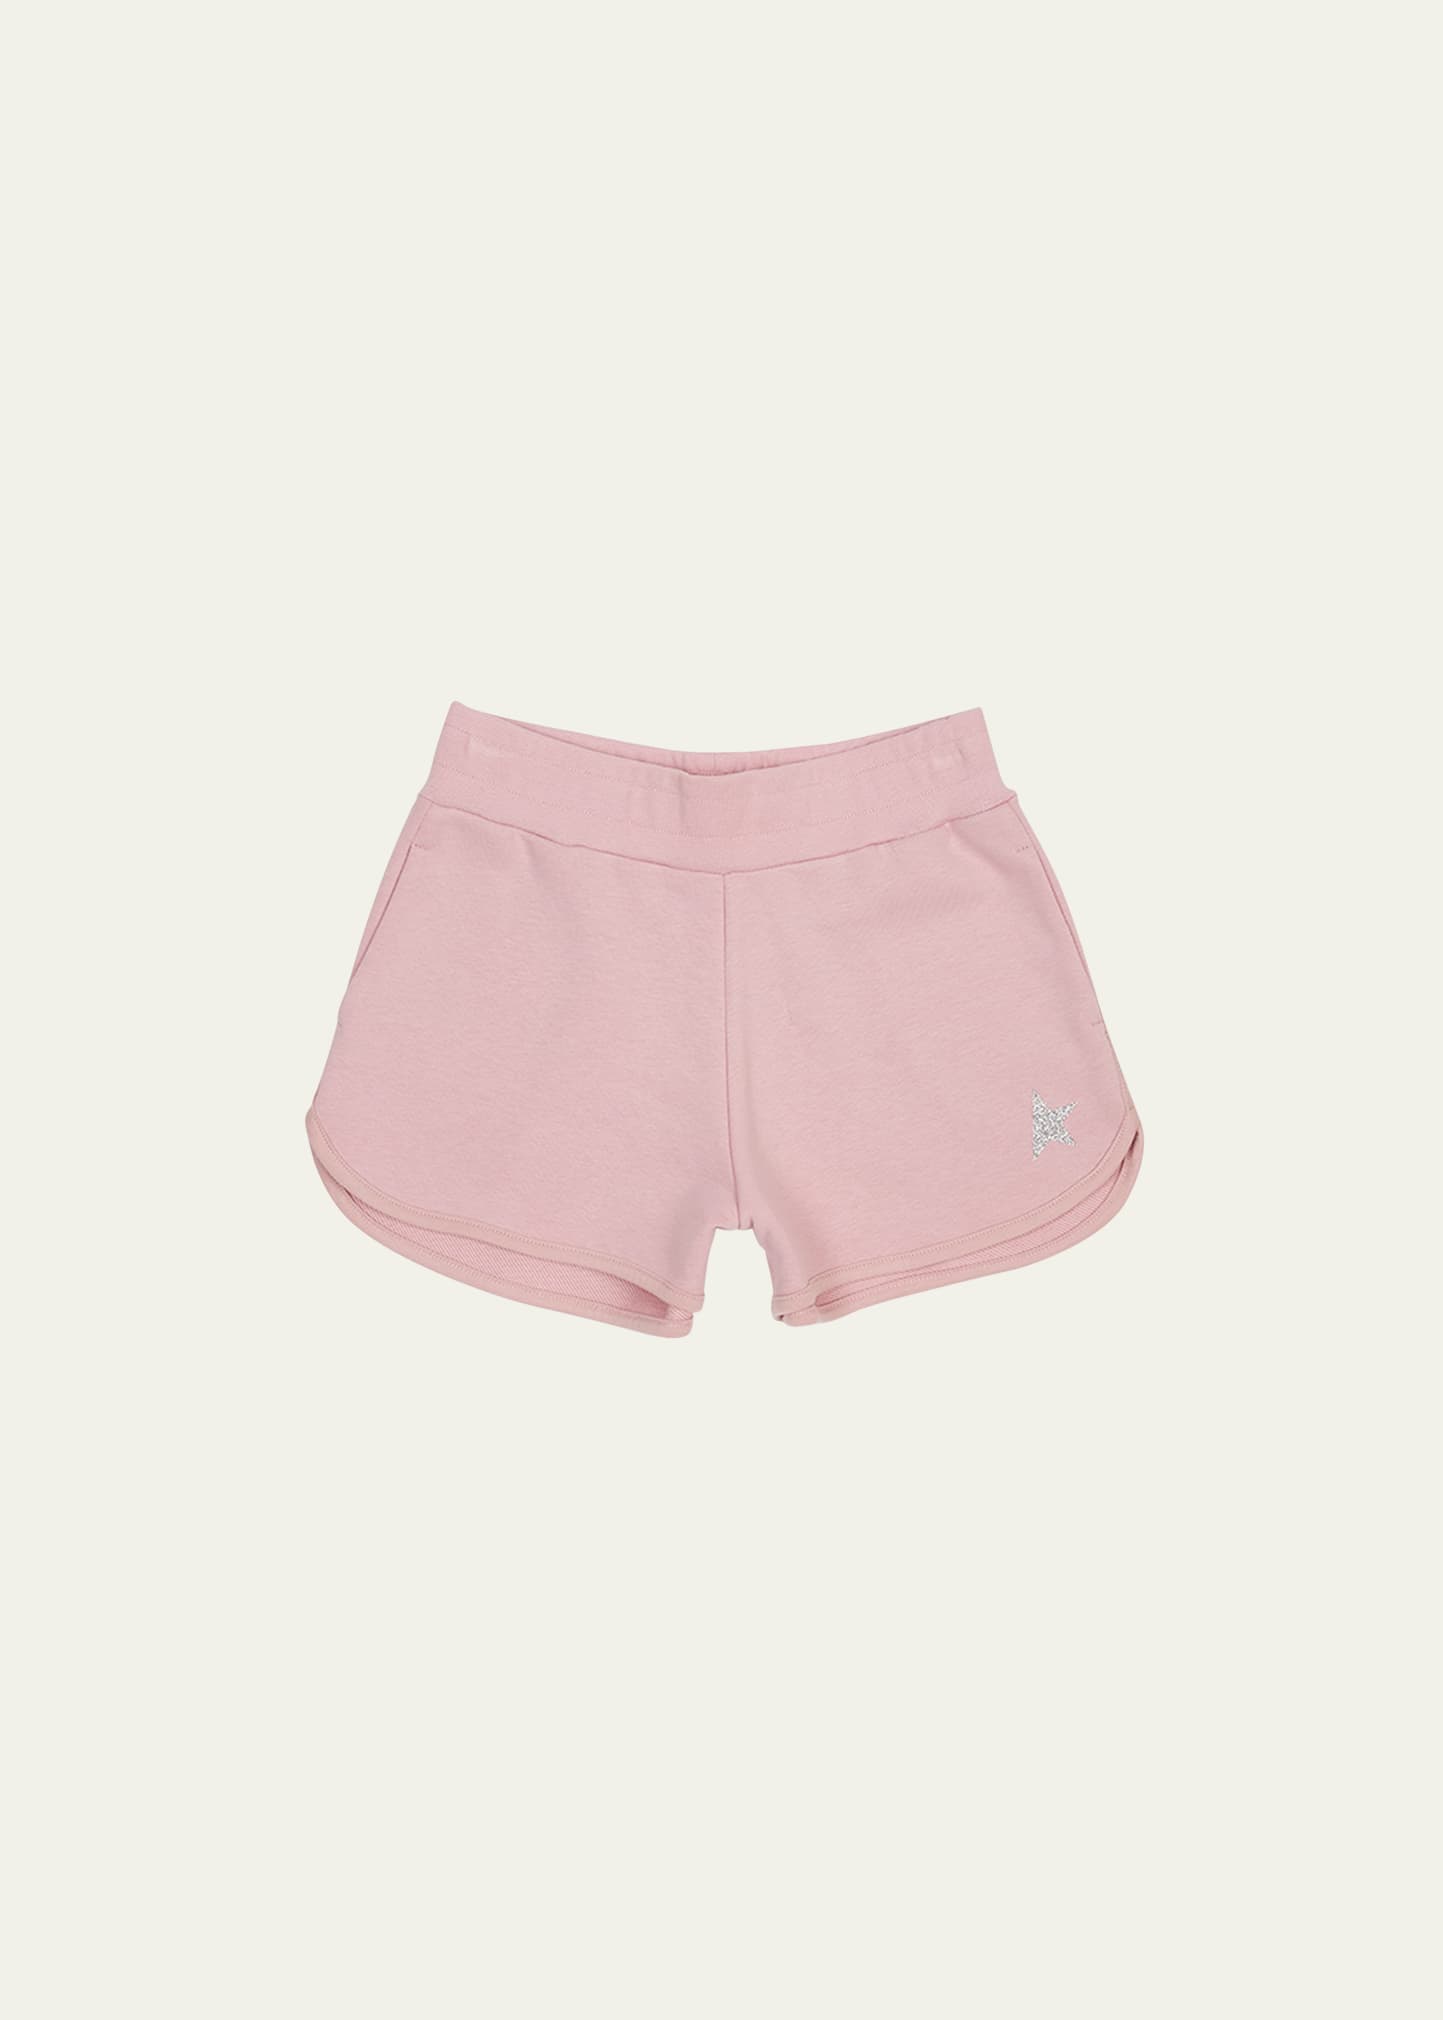 Golden Goose Kids' Girl's Glitter Star Fleece Shorts In Pink/white